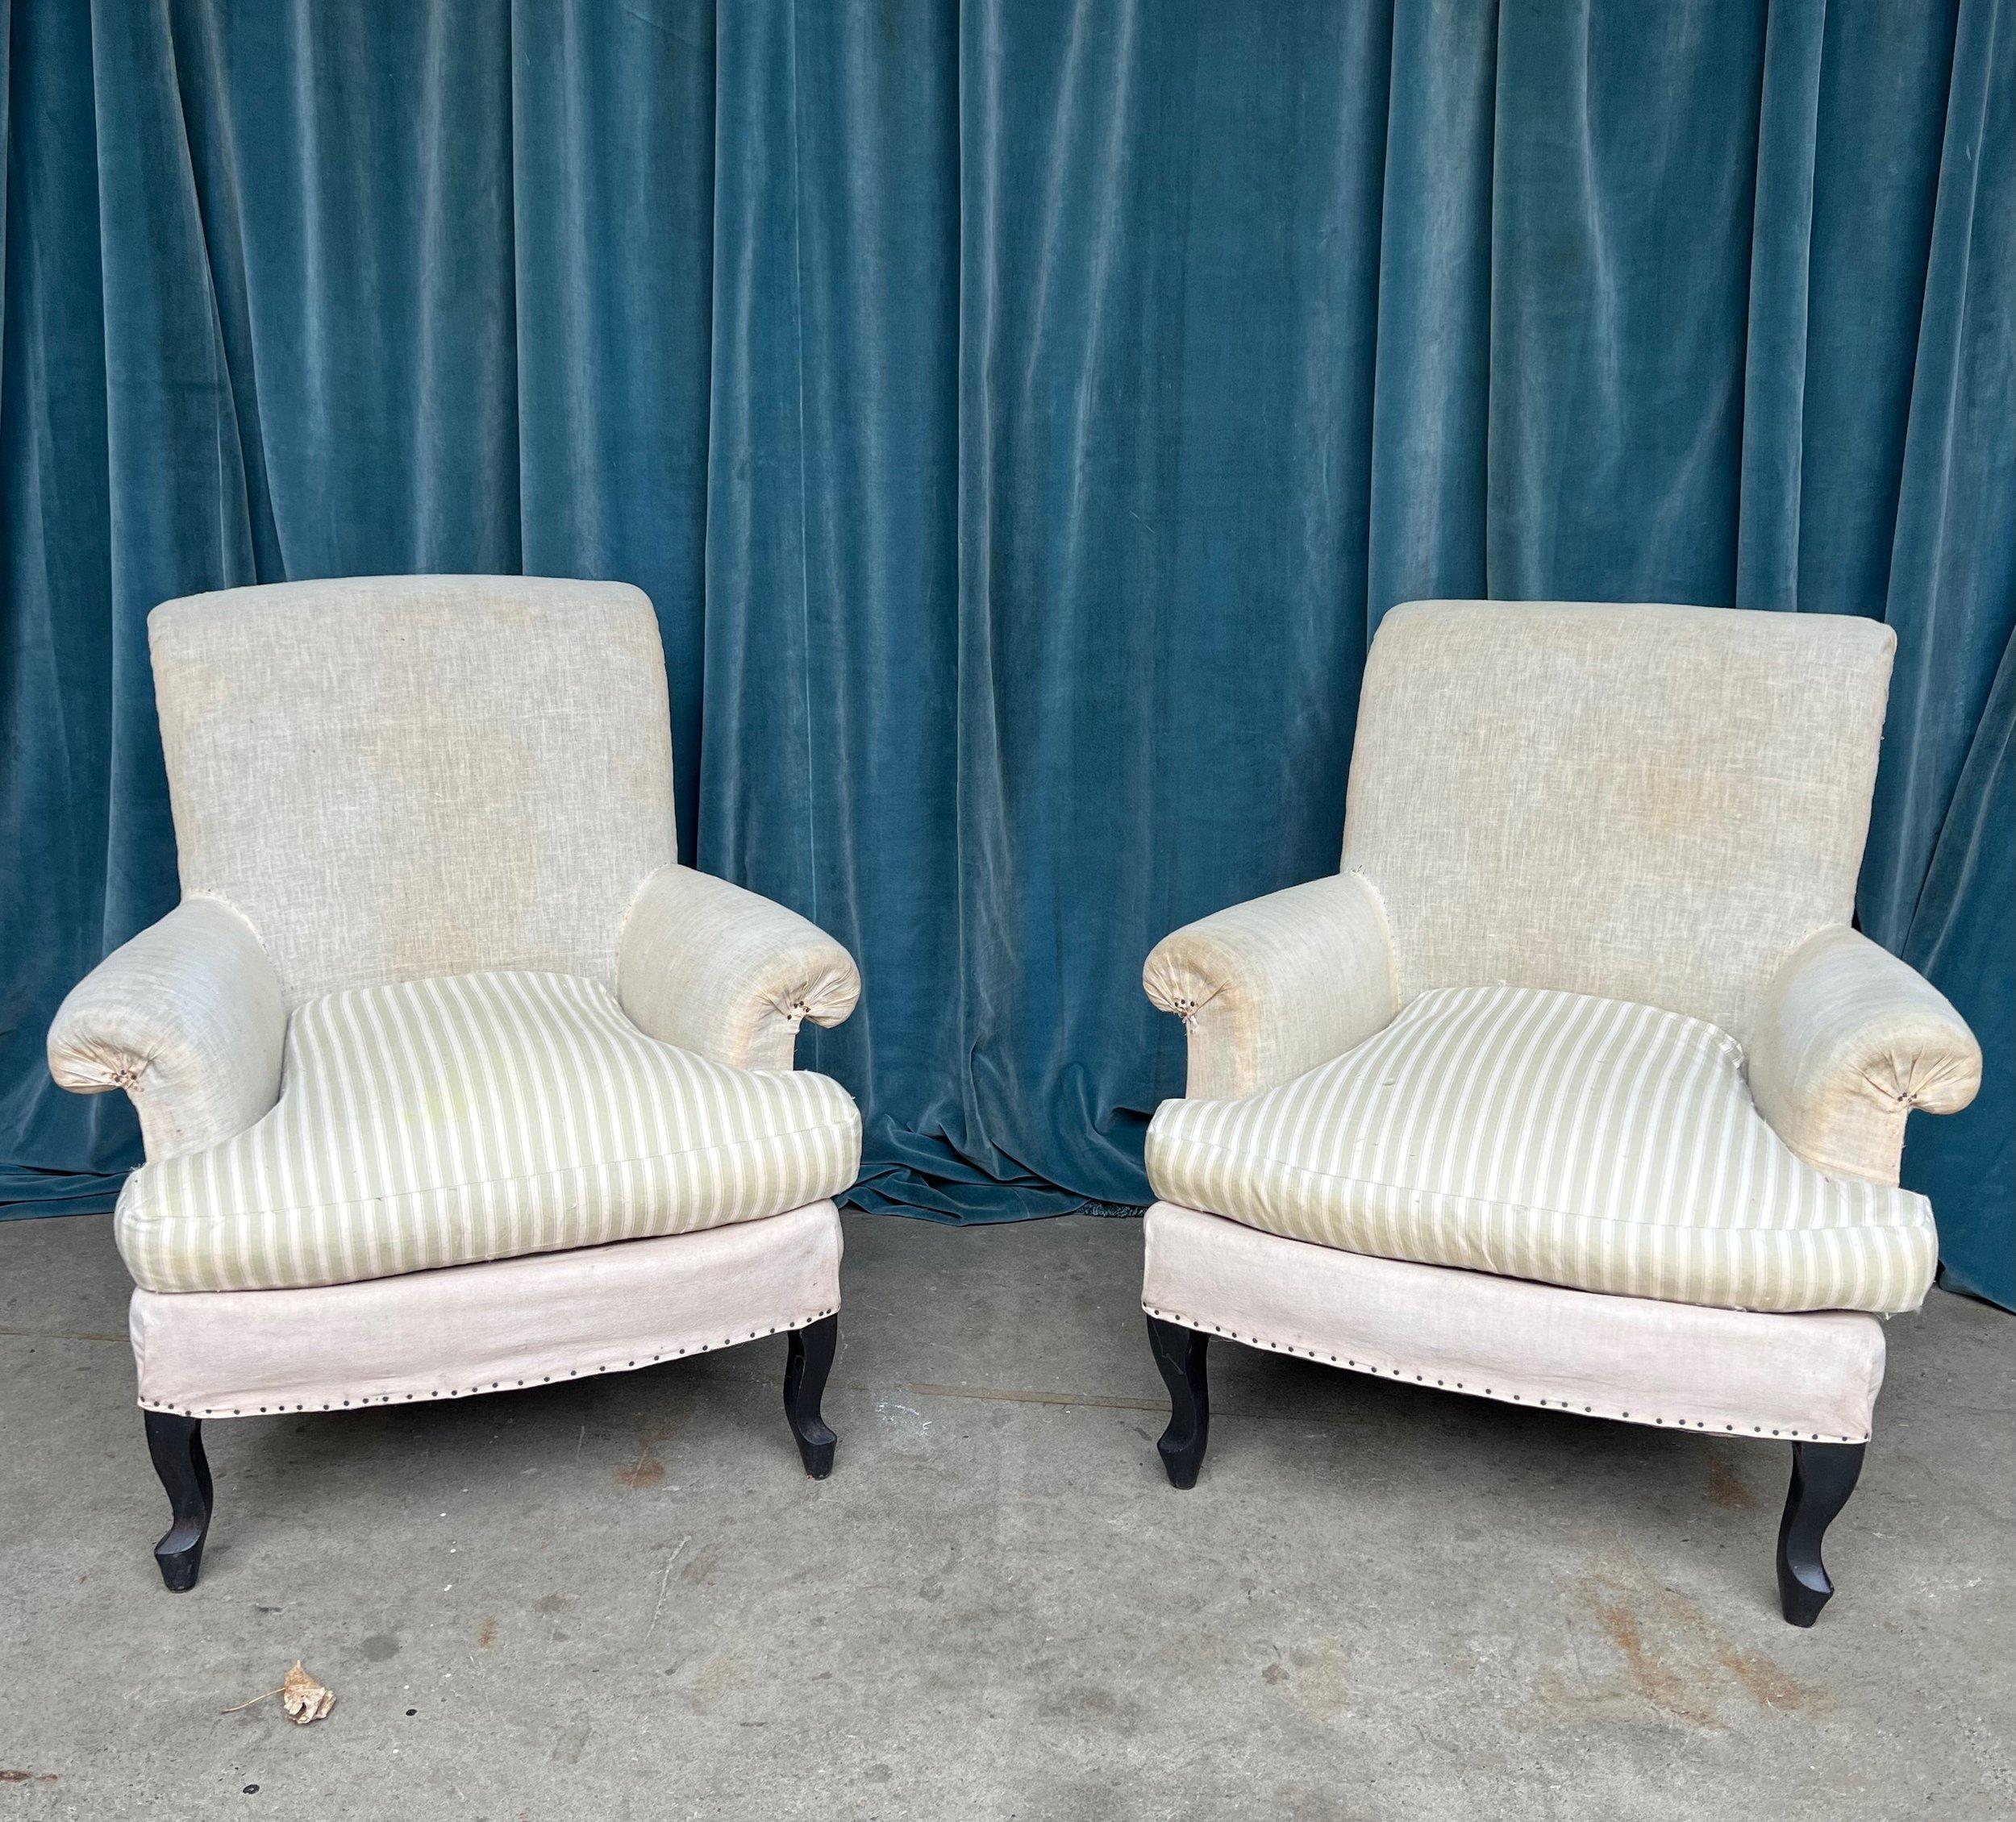 Ein sehr bequemes Paar kleiner französischer Napoleon-III-Sessel aus dem späten 19. Jahrhundert mit losen Sitzpolstern. Diese Stühle sind ein schönes Beispiel für den französischen Stil mit ihren eleganten Cabriole-Beinen und geschwungenen